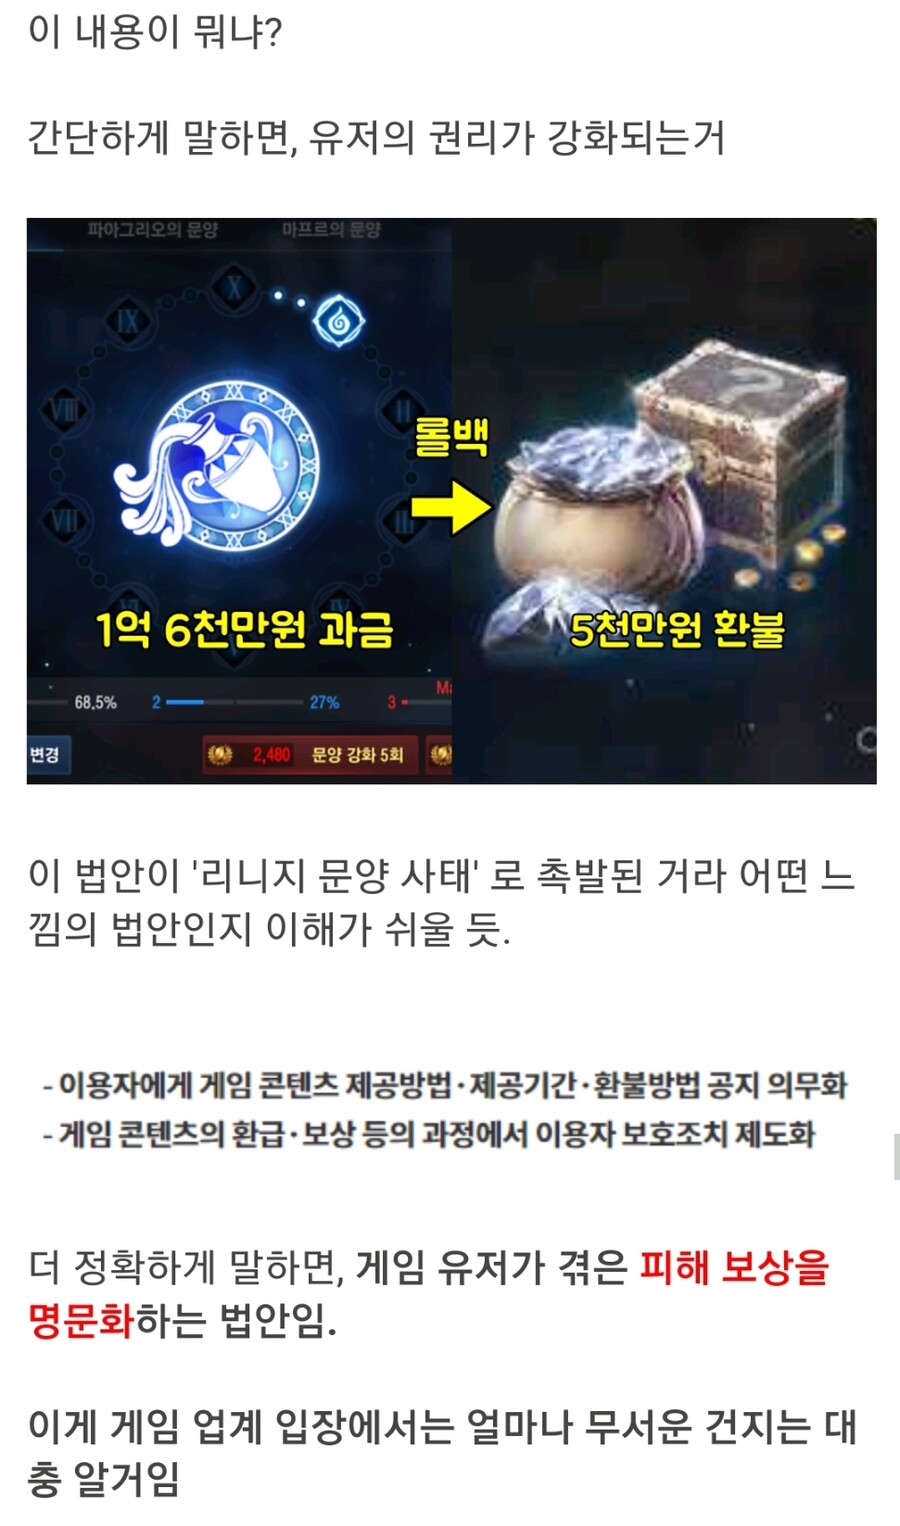 한국 게임계에 핵폭탄이 떨어질 예정